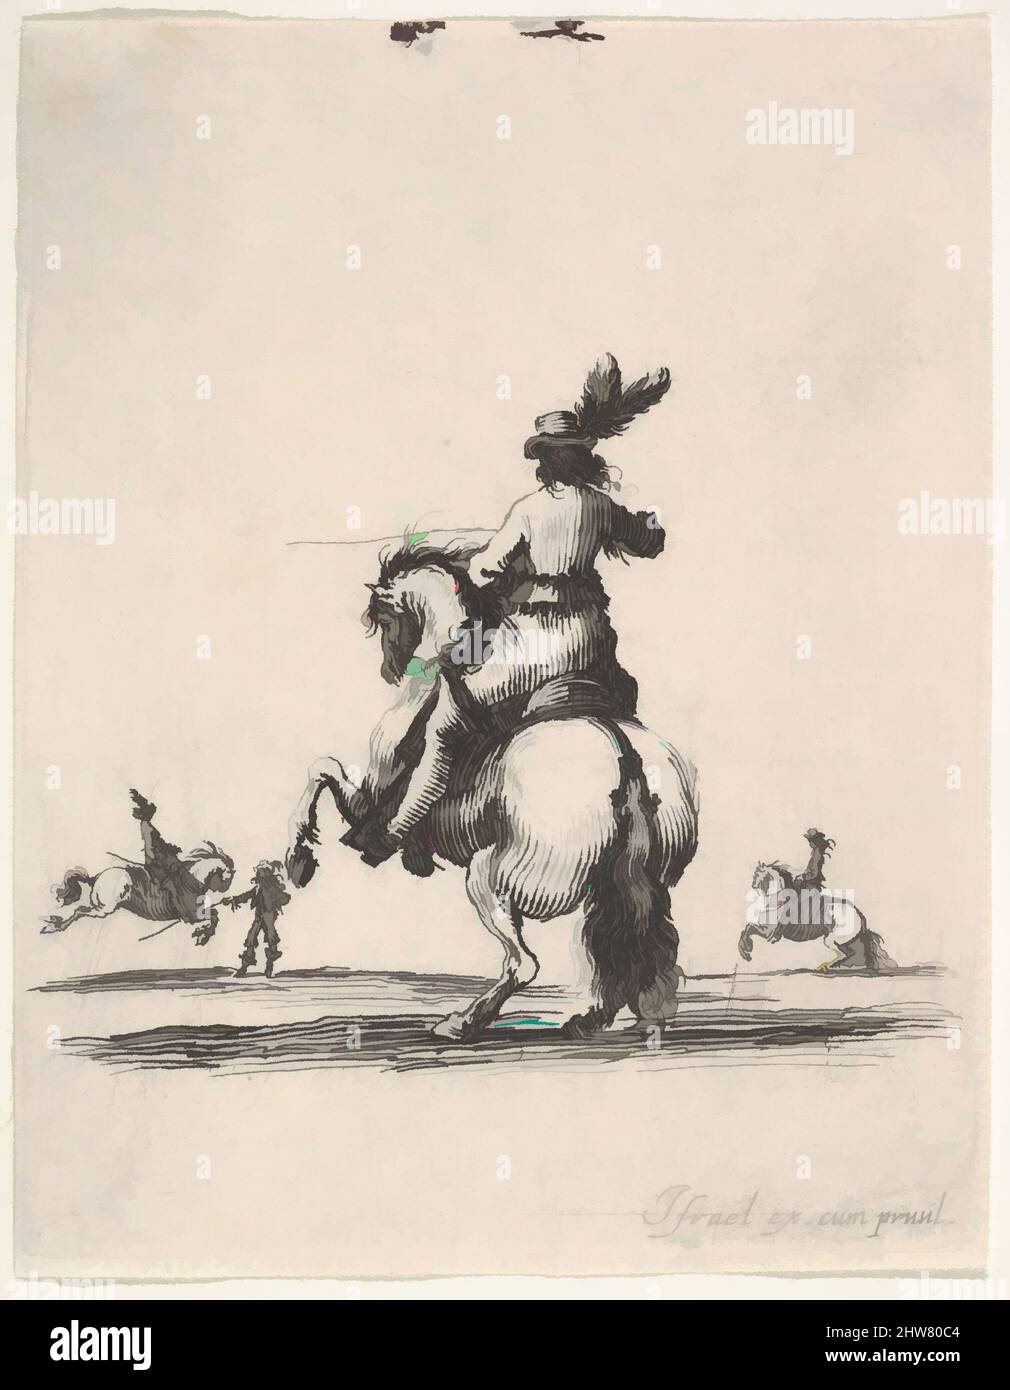 Art inspiré par Un cavalier au sommet d'un cheval d'élevage, vu de l'arrière-plan et tourné vers la gauche, deux cavaliers en arrière-plan, de 'divers exercices de cavalerie' (Diversets exerçes de cavalerie), ca. 1642–45, Décapage, feuille : 3 7/16 x 2 11/16 po. (8,8 x 6,8 cm), Prints, Stefano della, oeuvres classiques modernisées par Artotop avec une touche de modernité. Formes, couleur et valeur, impact visuel accrocheur sur l'art émotions par la liberté d'œuvres d'art d'une manière contemporaine. Un message intemporel qui cherche une nouvelle direction créative. Artistes qui se tournent vers le support numérique et créent le NFT Artotop Banque D'Images